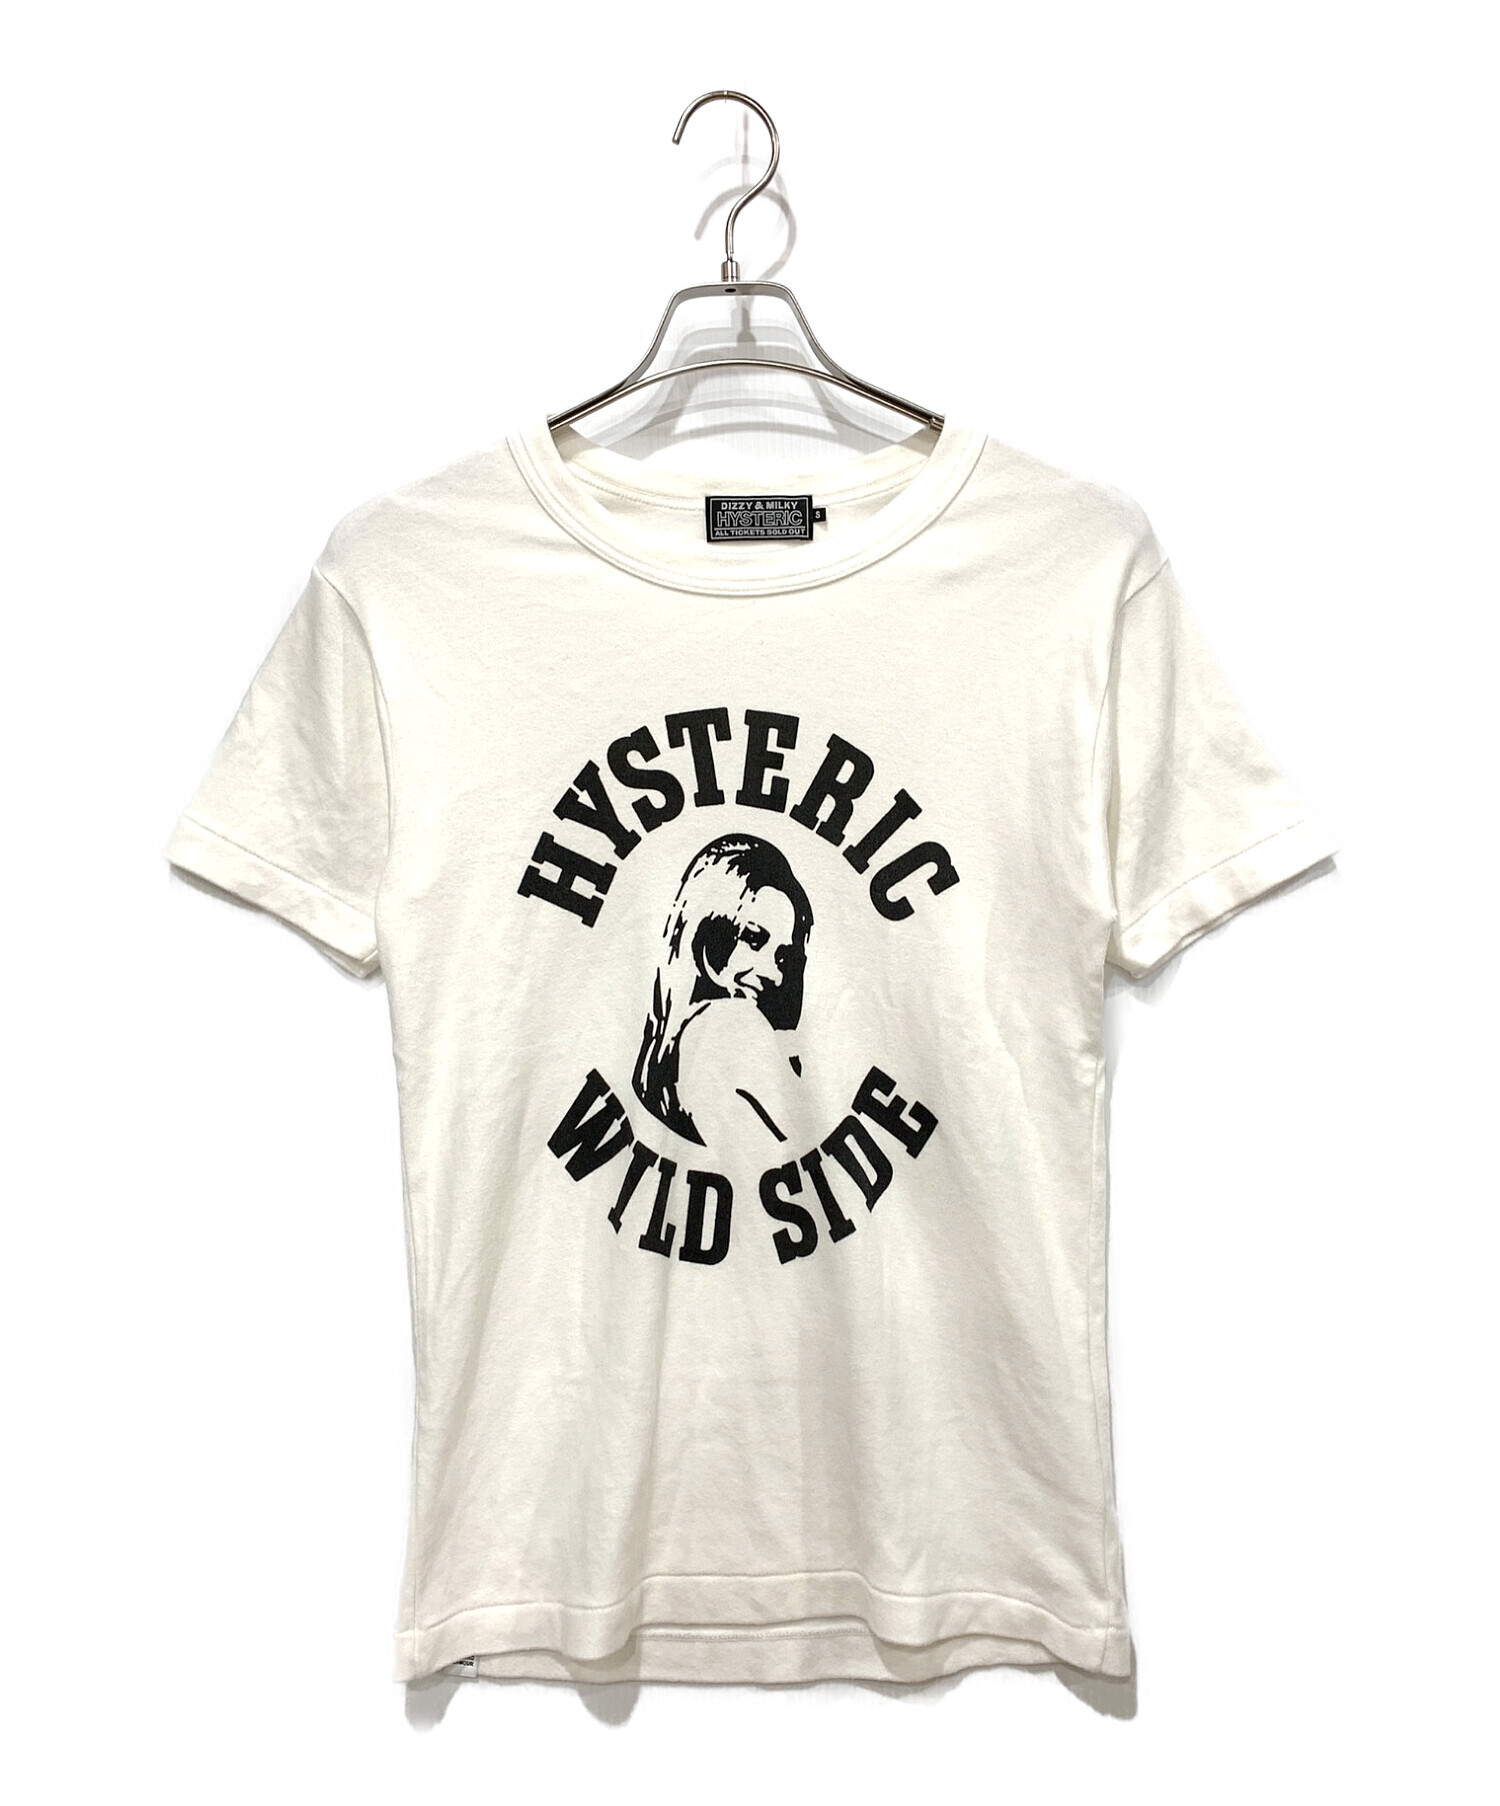 Hysteric Glamour (ヒステリックグラマー) プリントTシャツ ホワイト サイズ:Sサイズ